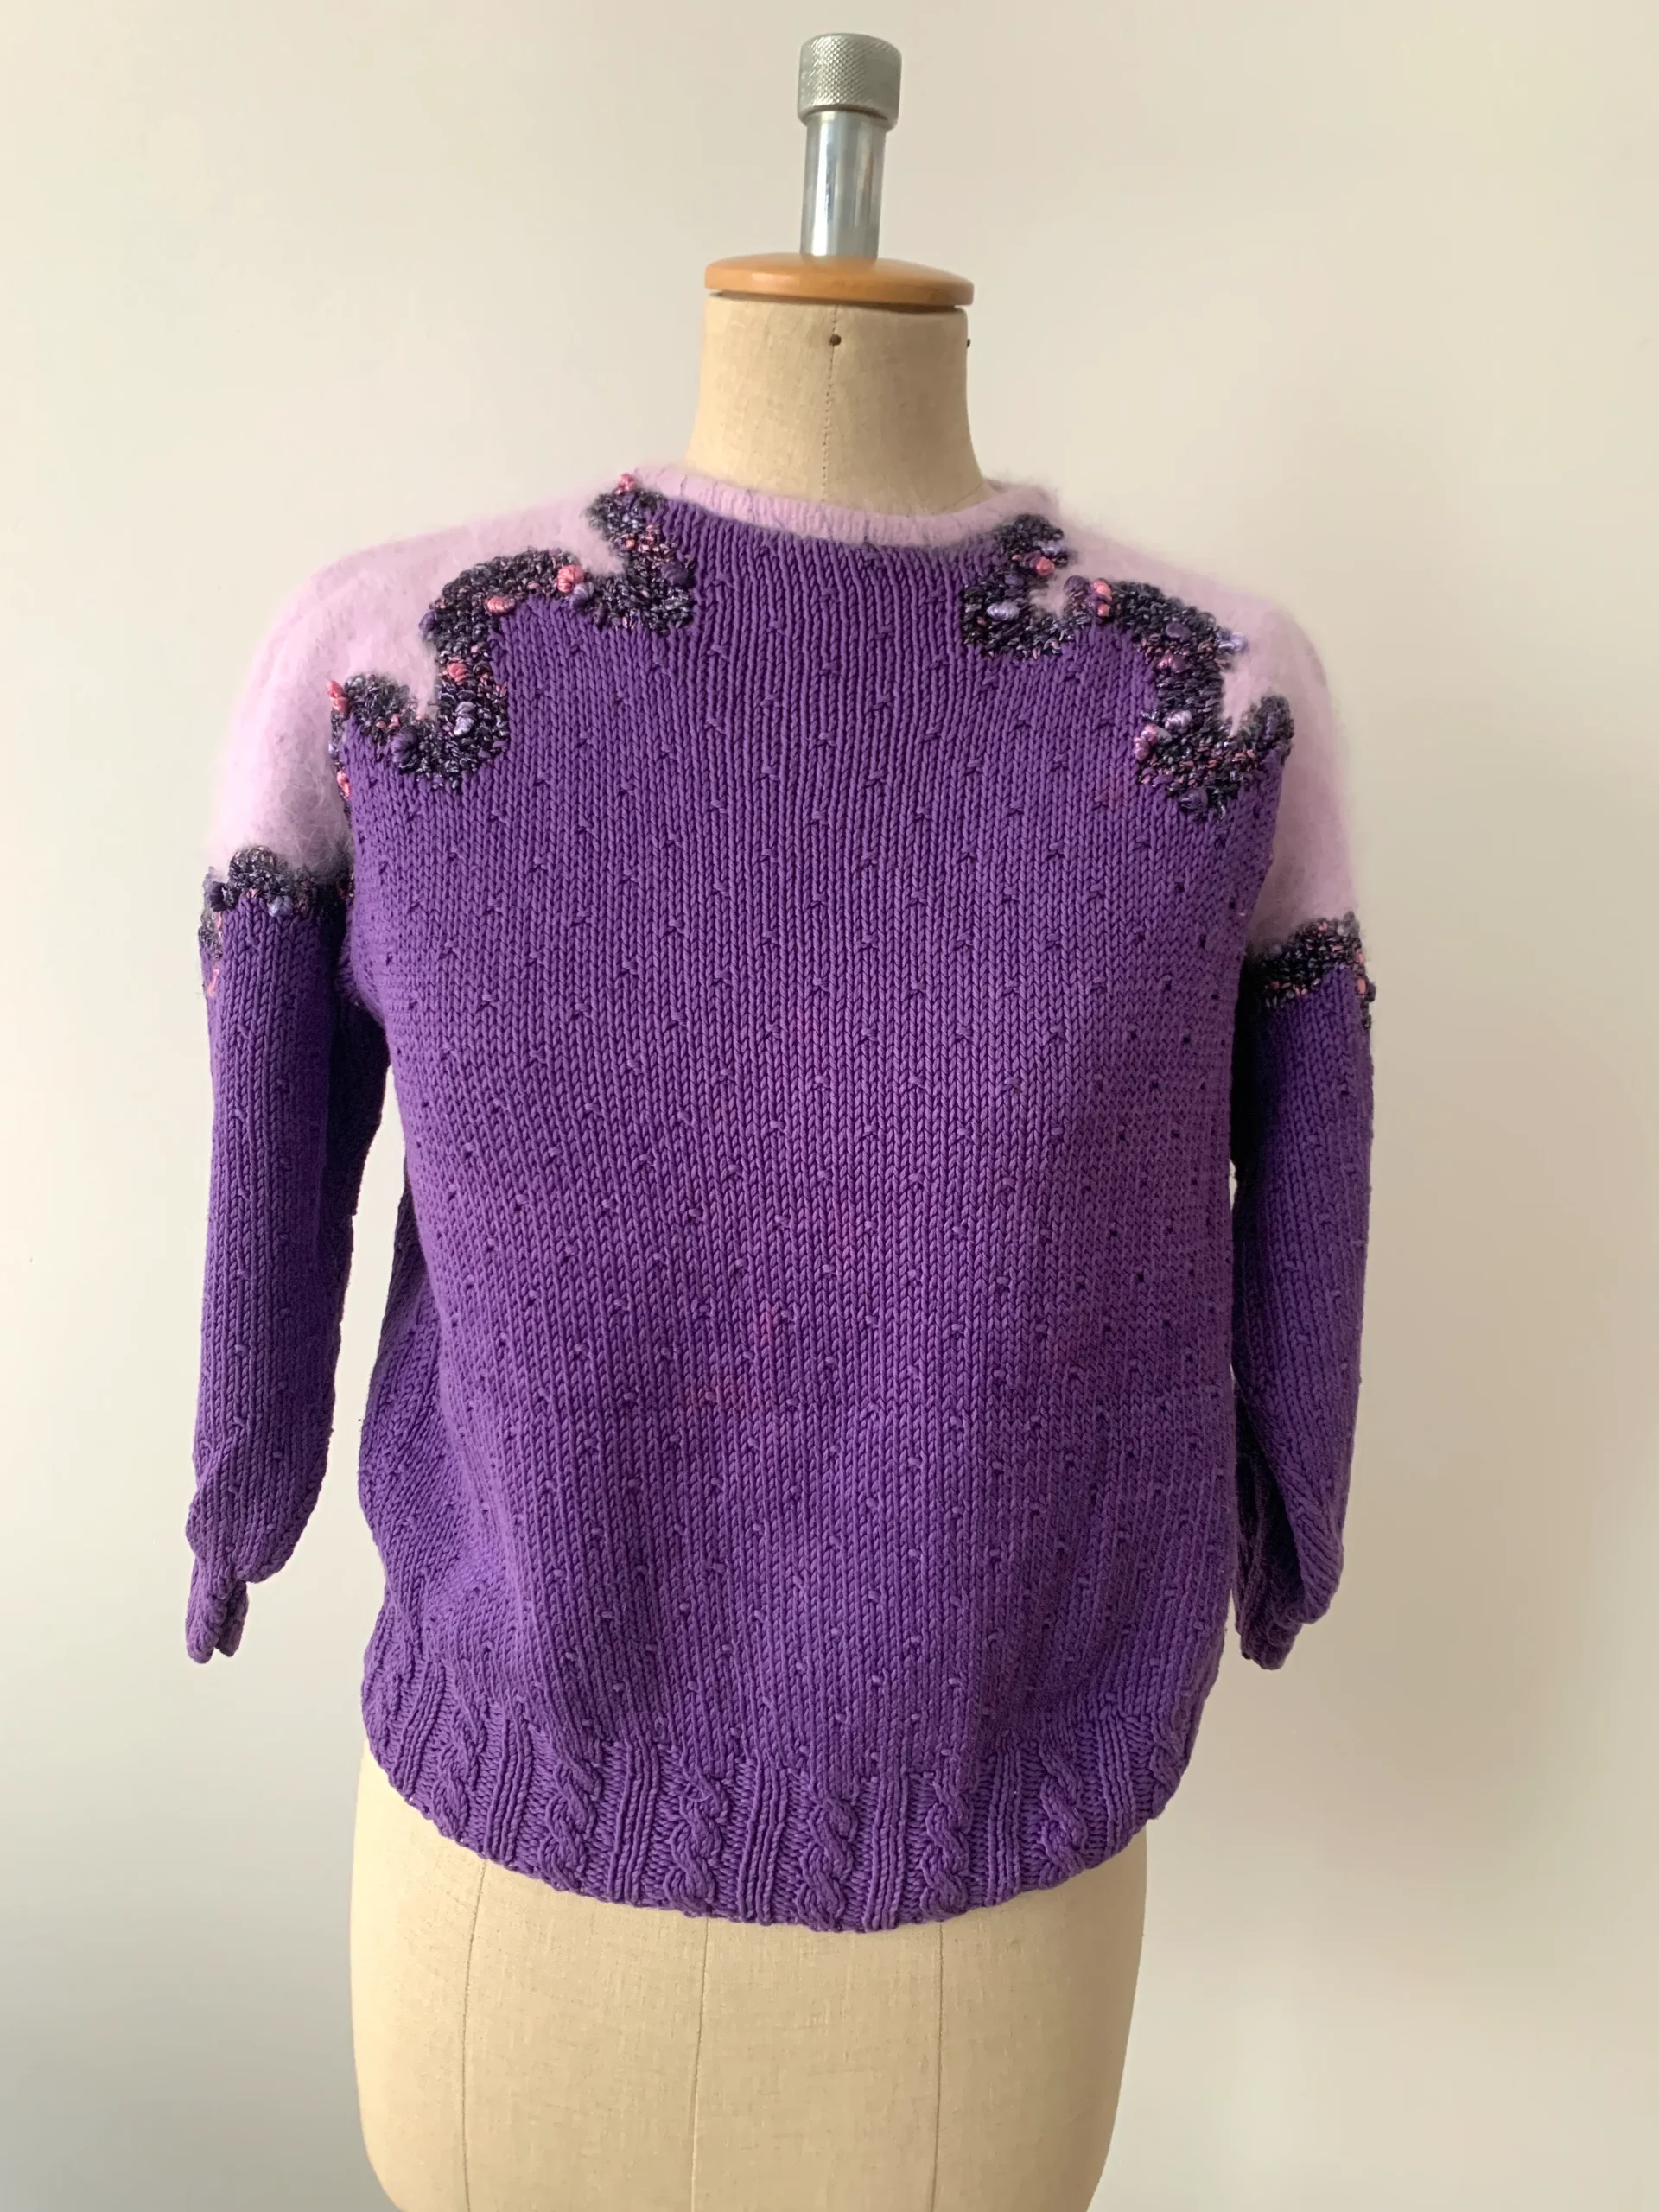 ヨーロッパ古着 80s セーター 刺繍 パープル 紫 ピンク ニット ヴィンテージ レディース